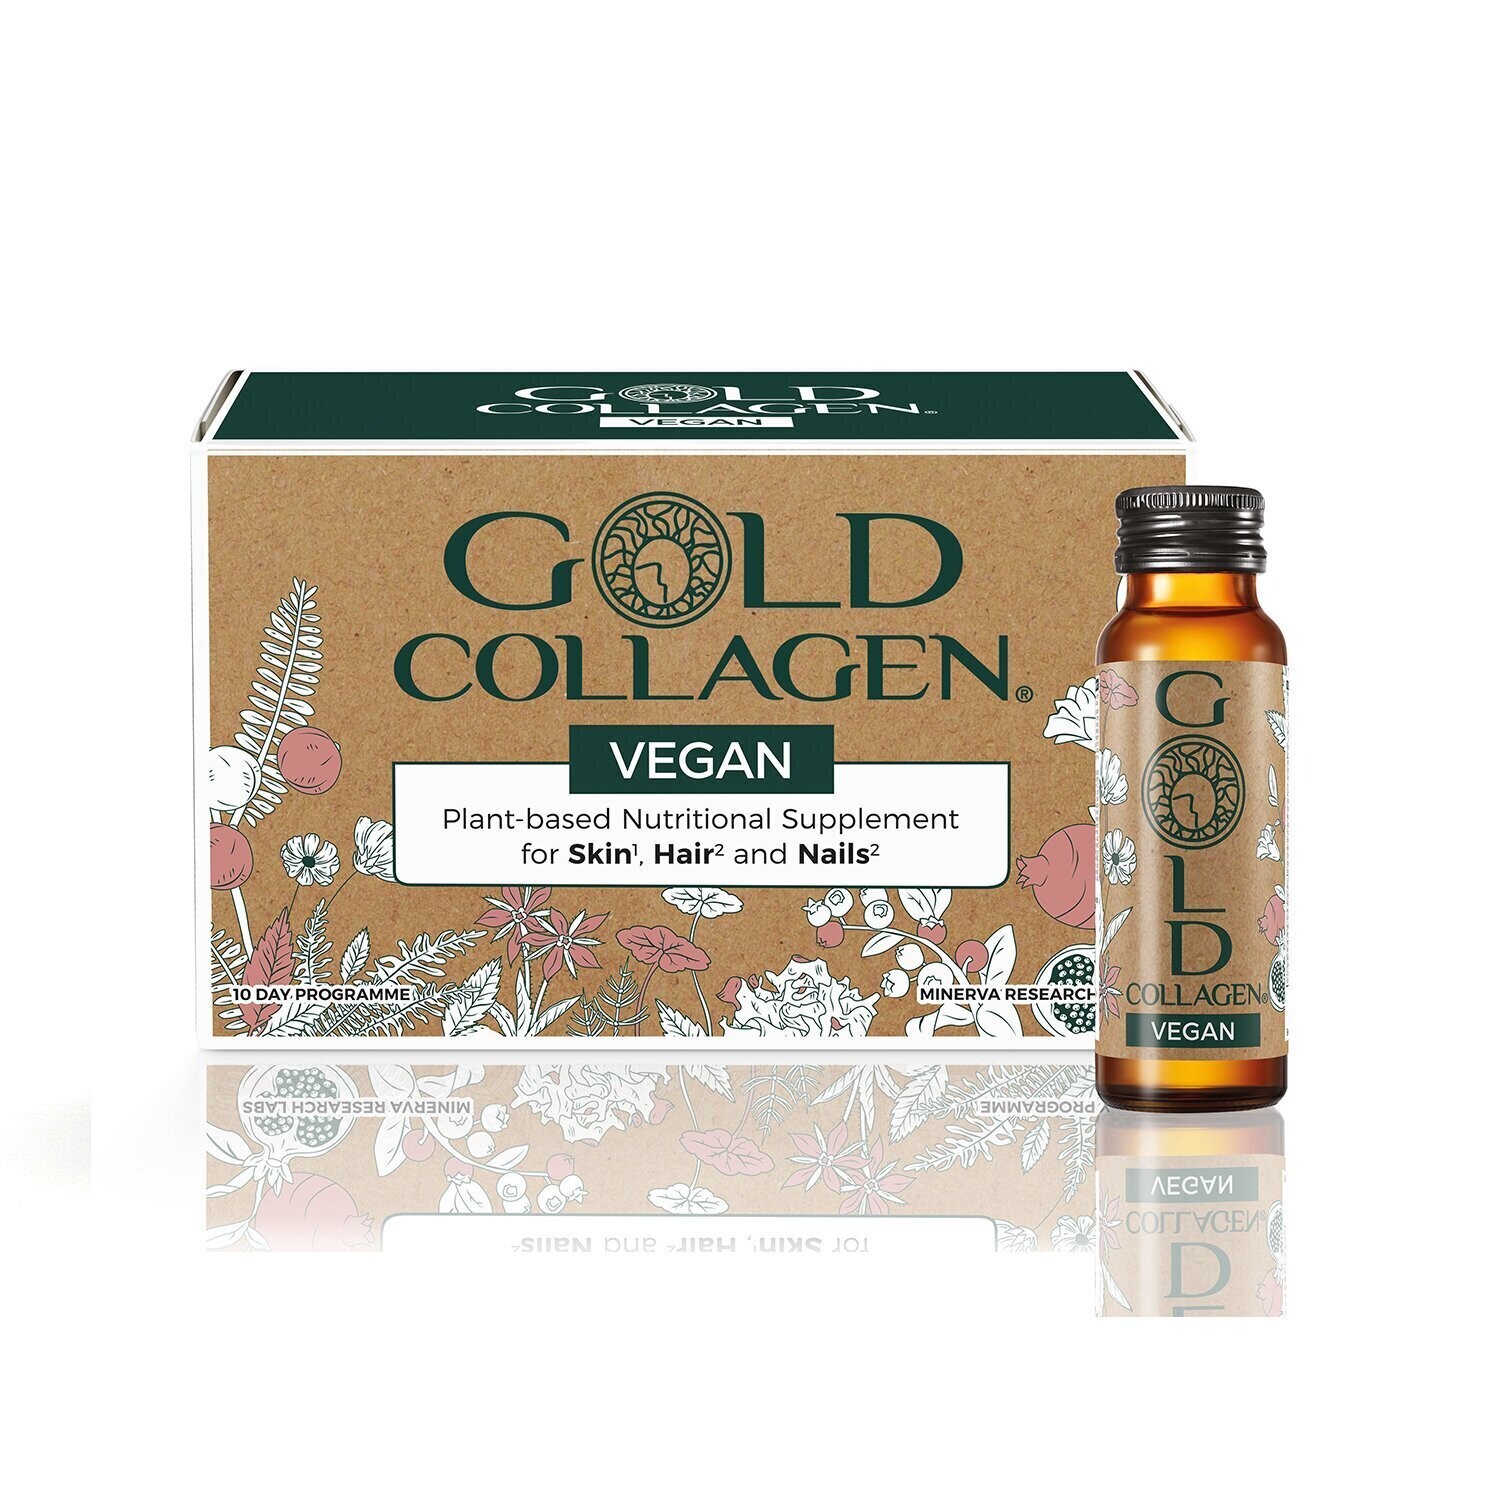 Gold Collagen Vegan 10x50ml - интернет-магазин профессиональной косметики Spadream, изображение 38328